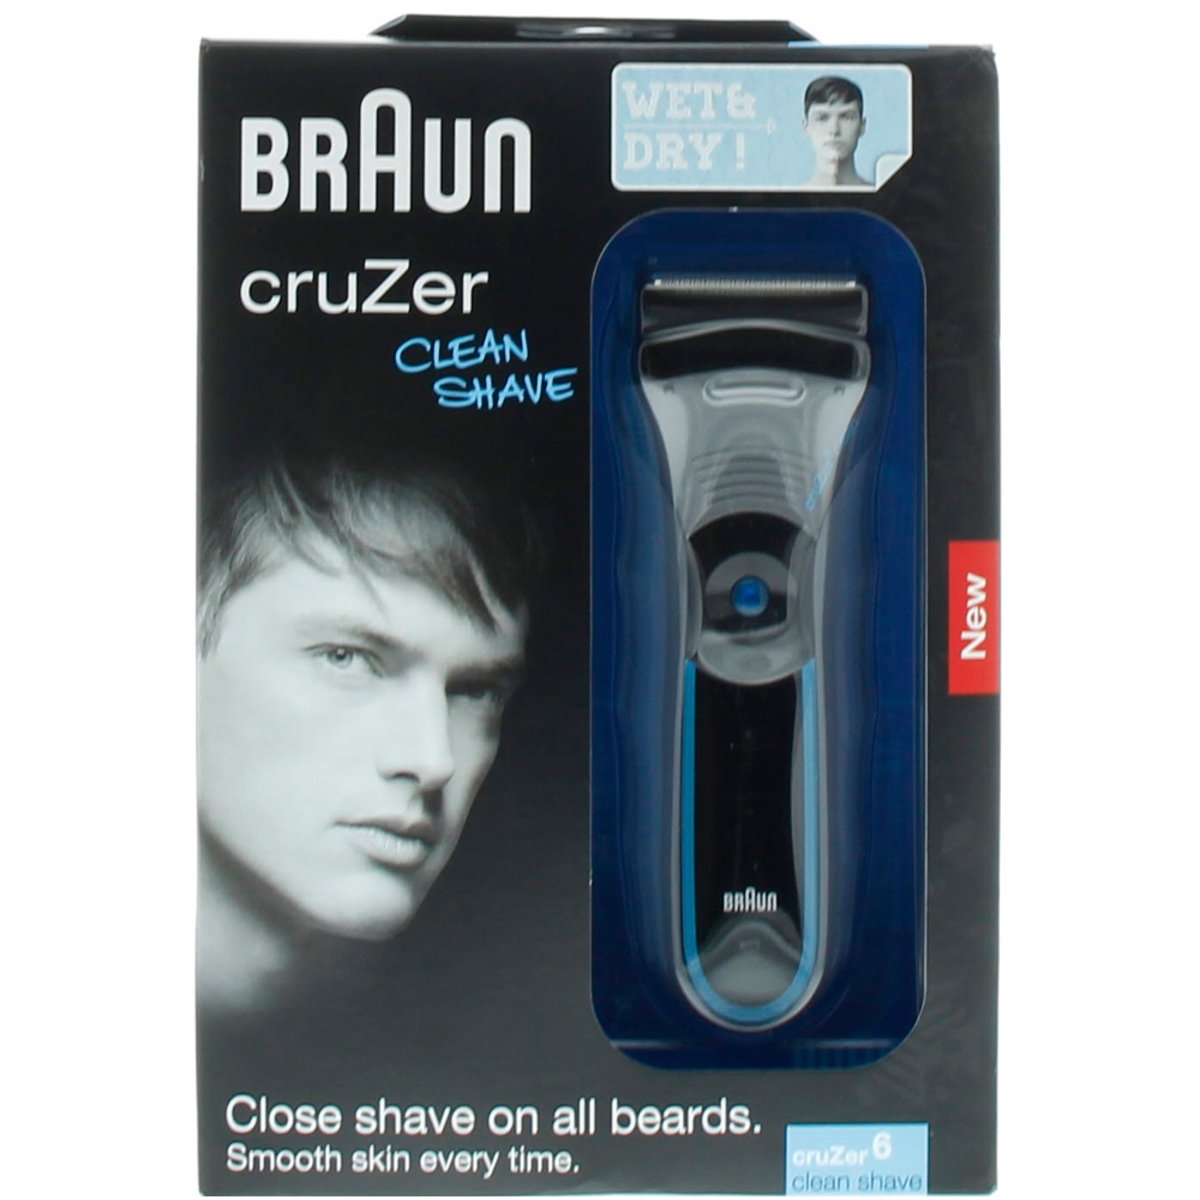 Braun Cuzer6 Shaver Wet & Dry 5414